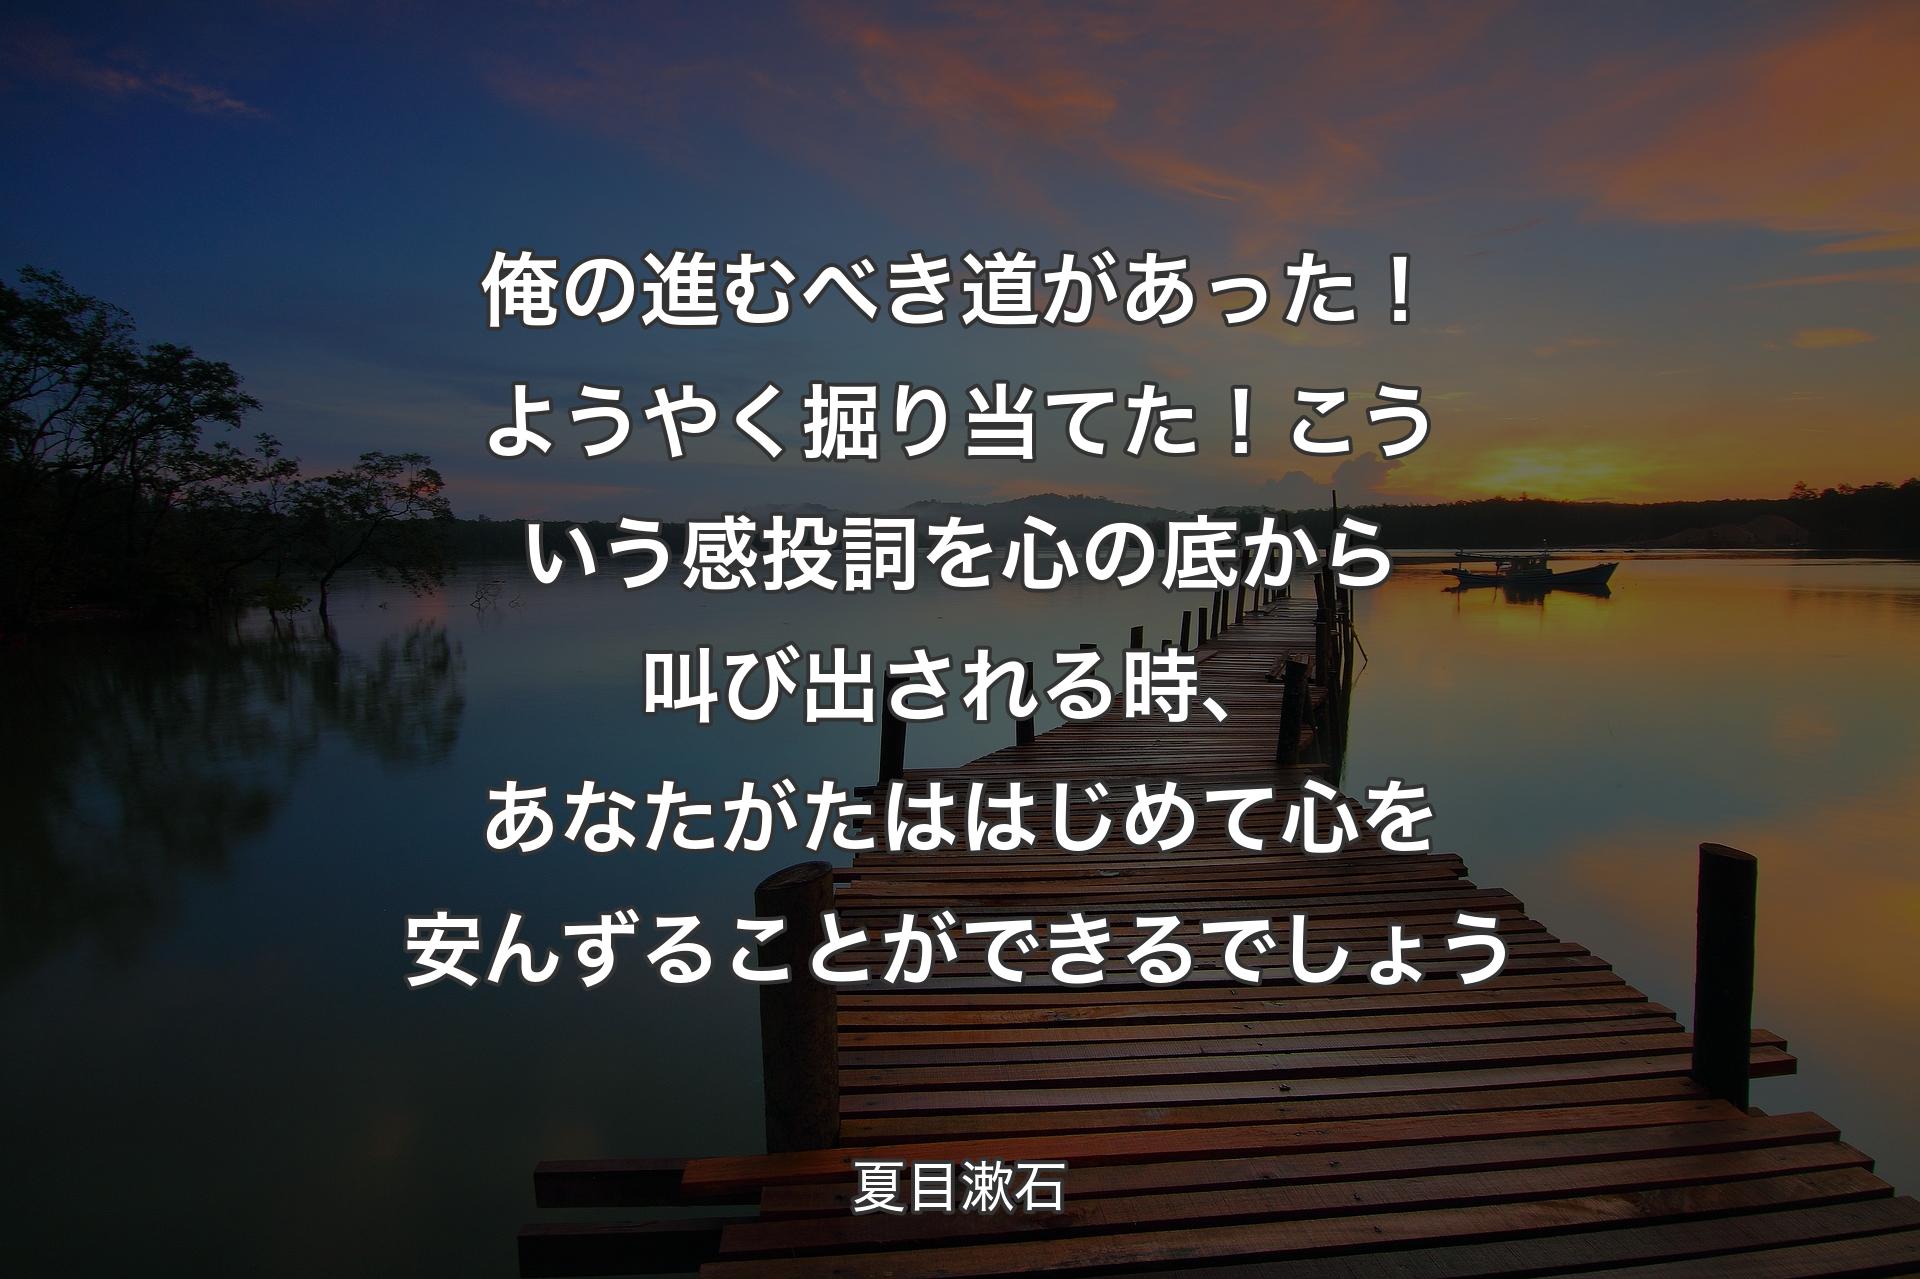 【背景3】俺の進むべき道があった！ようやく掘り当てた！こういう感投詞を心の底から叫び出される時、あなたがたははじめて心を安んずることができるでしょう - 夏目漱石